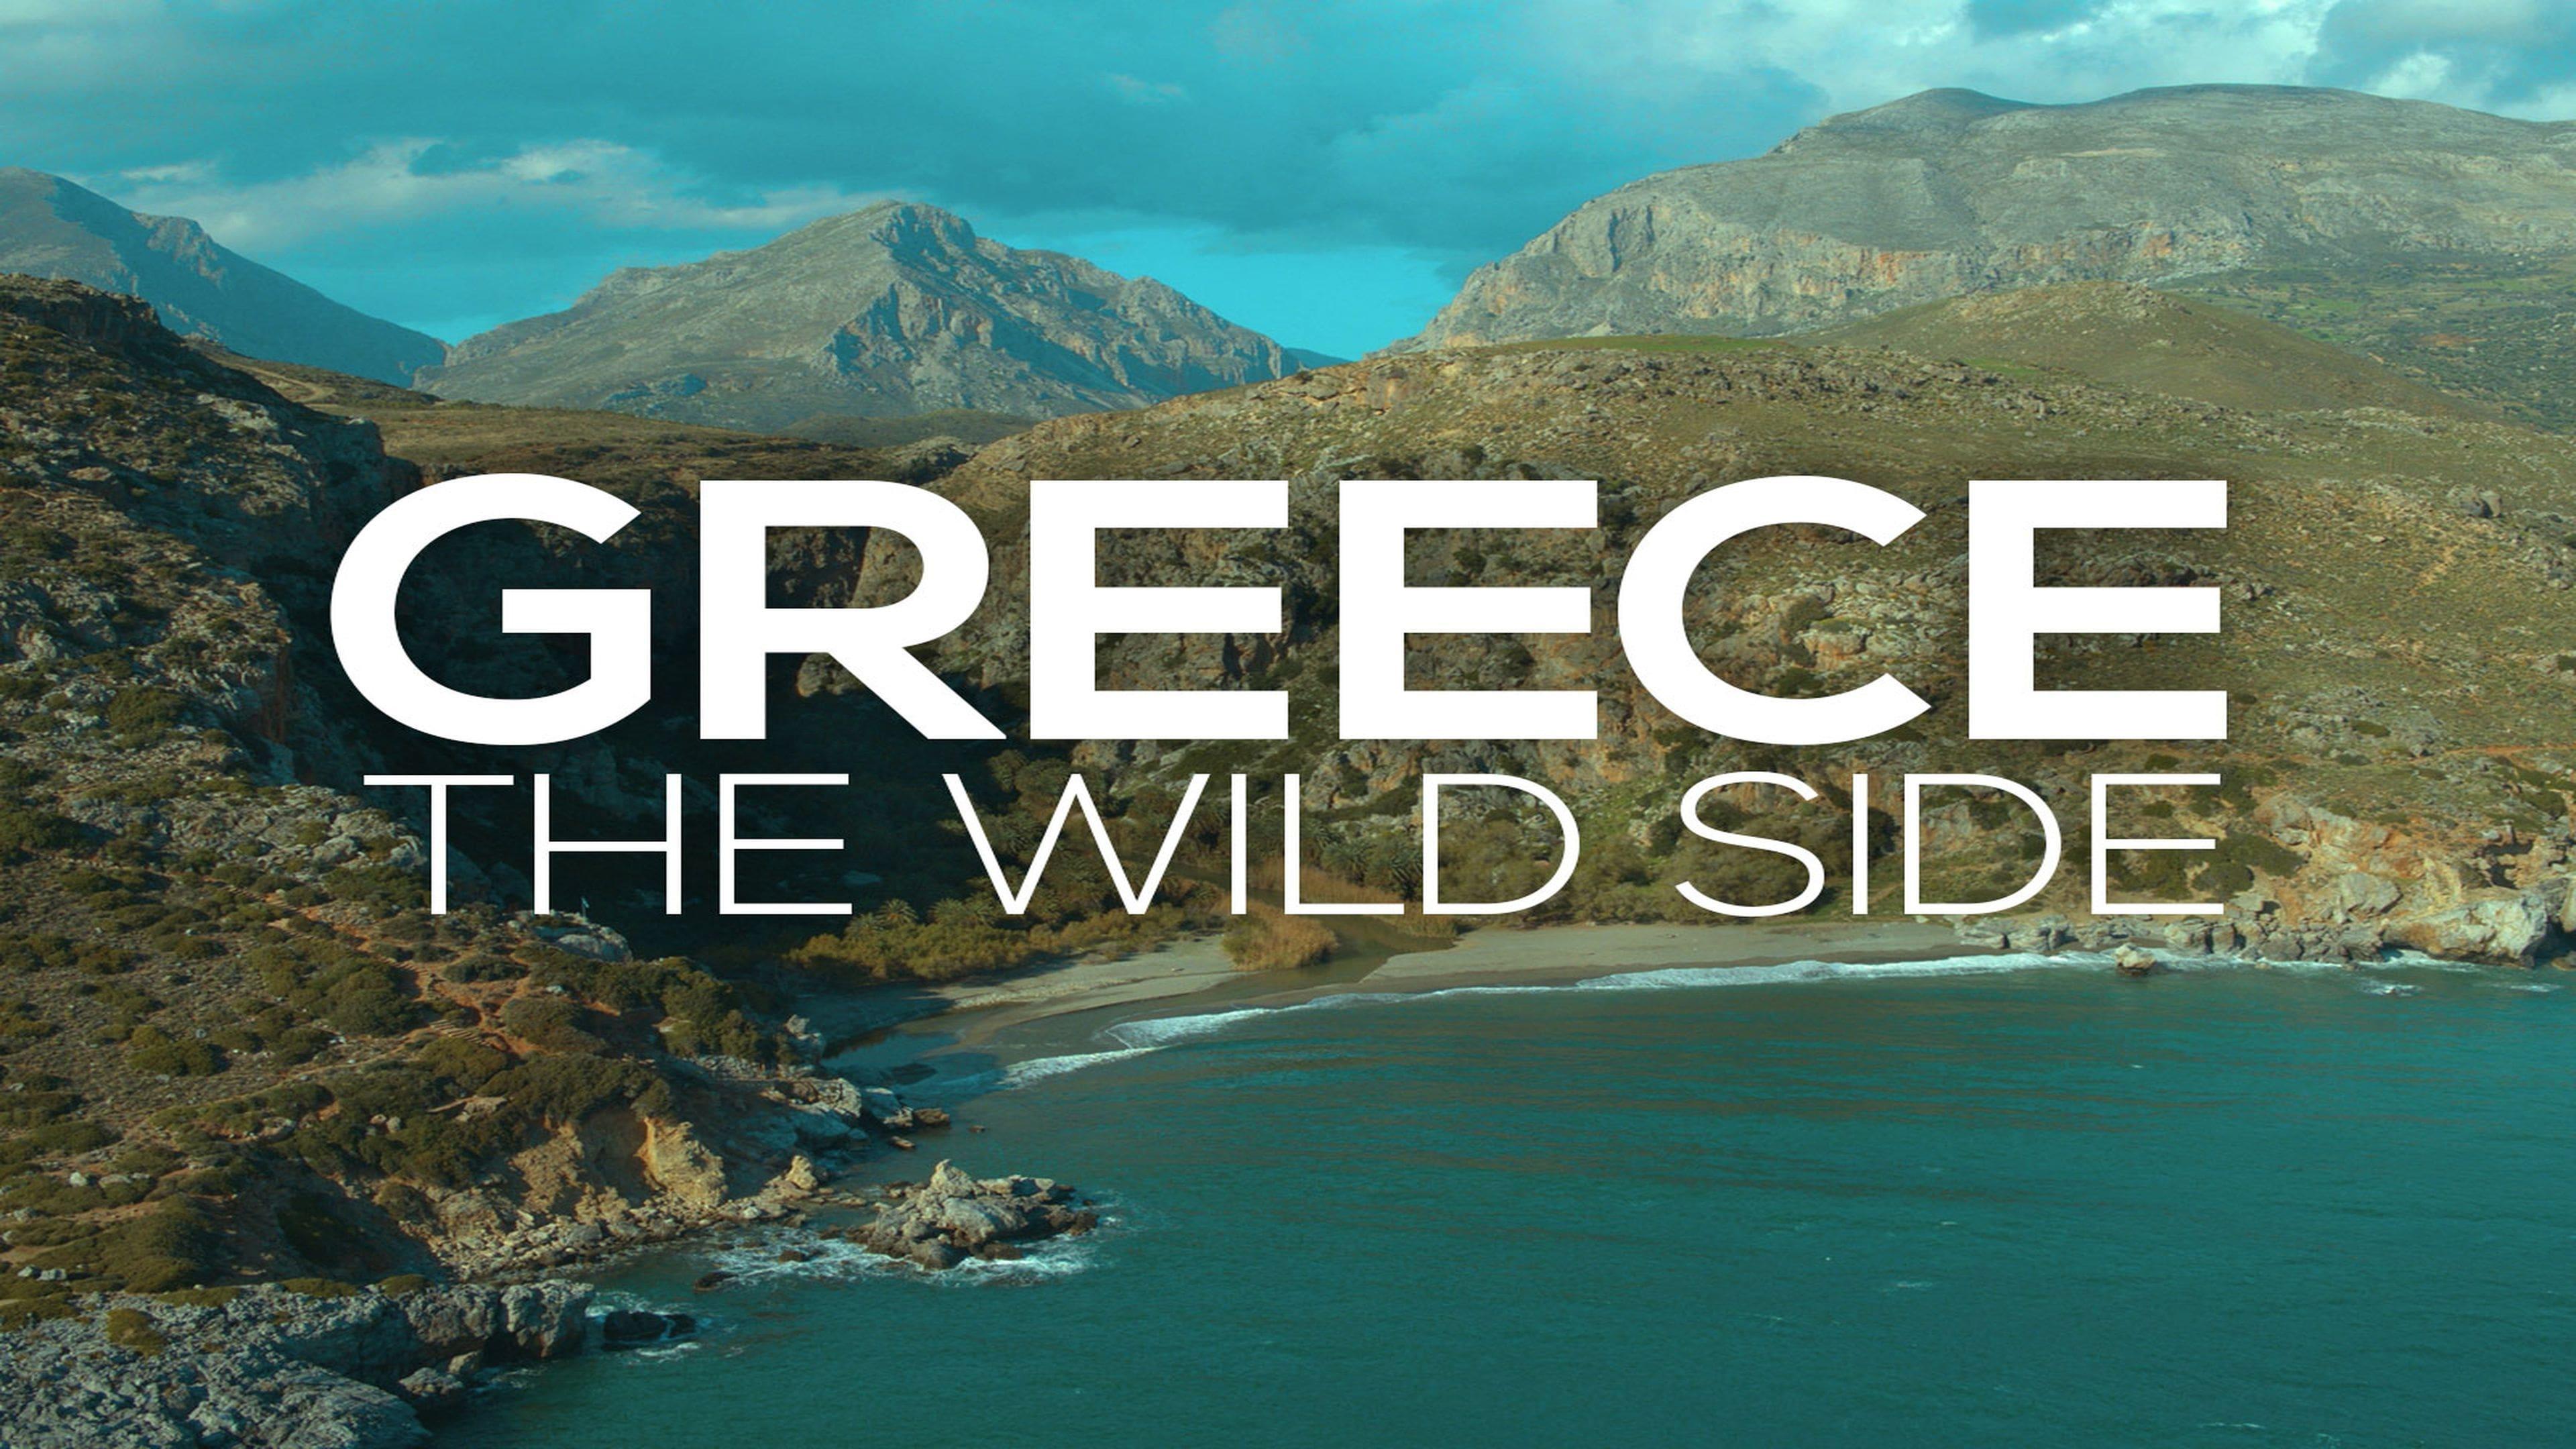 Greece - The Wild Side backdrop